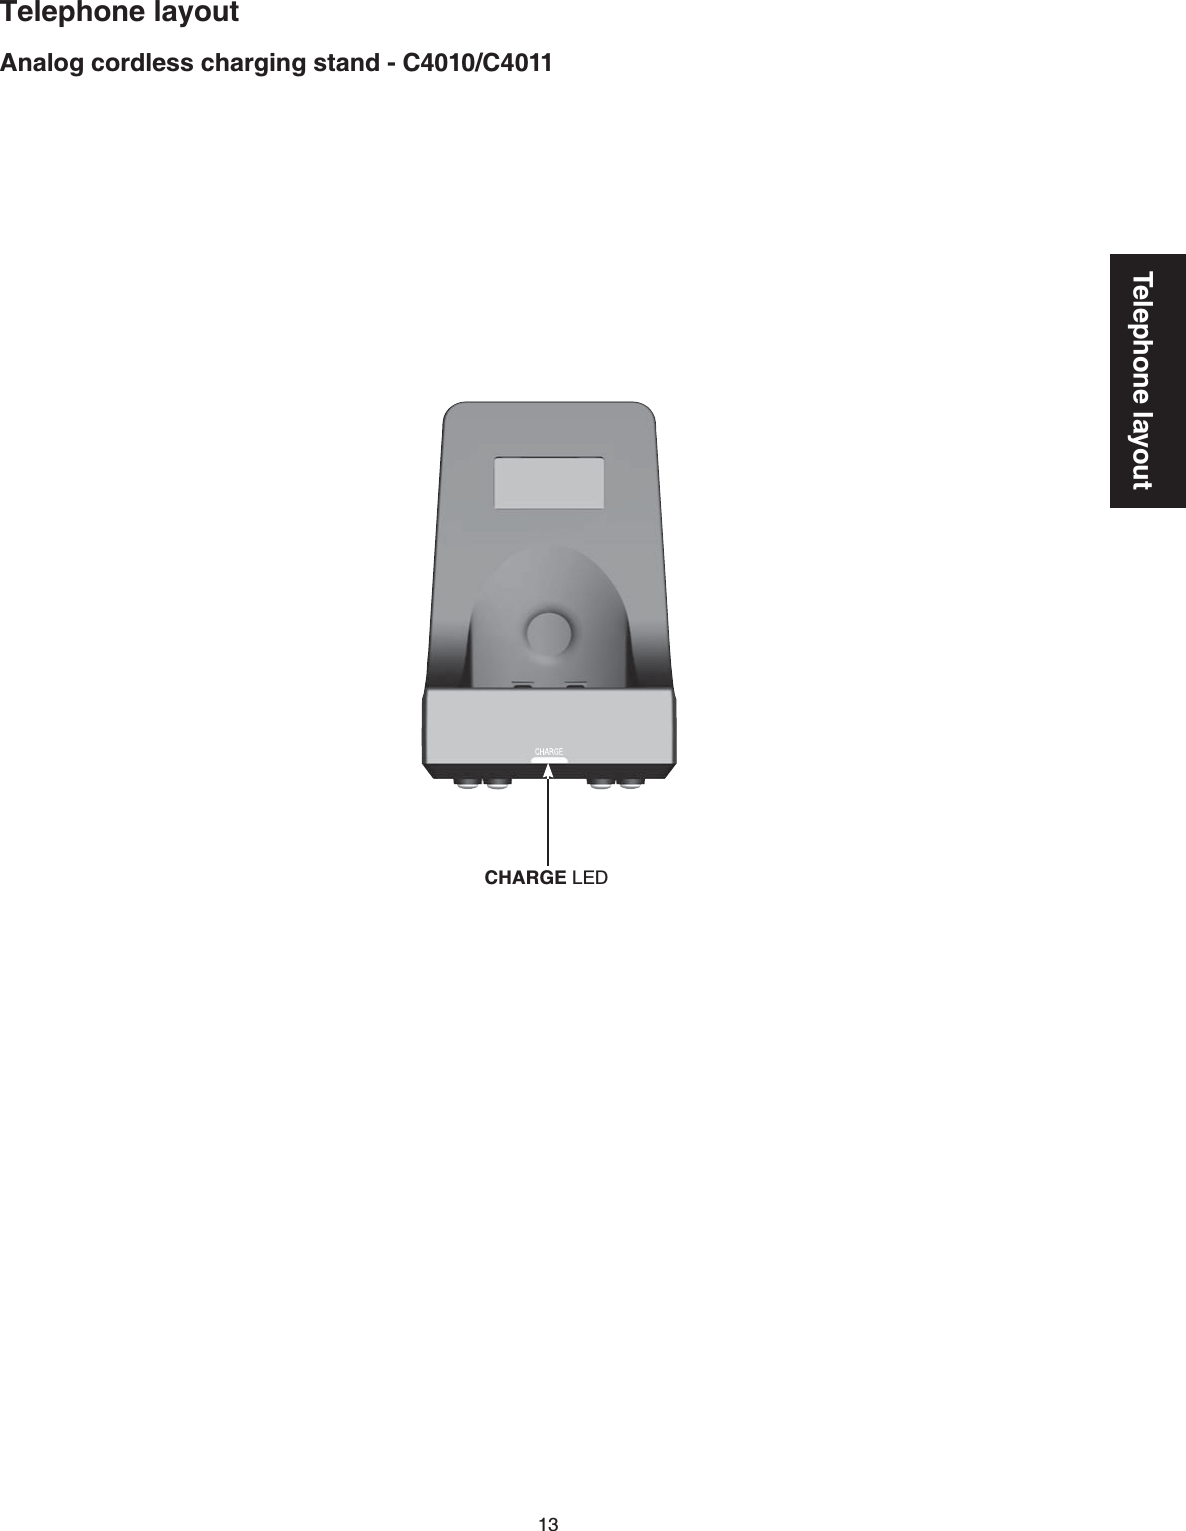 13Telephone layoutTelephone layoutAnalog cordless charging stand - C4010/C4011CHARGE LED